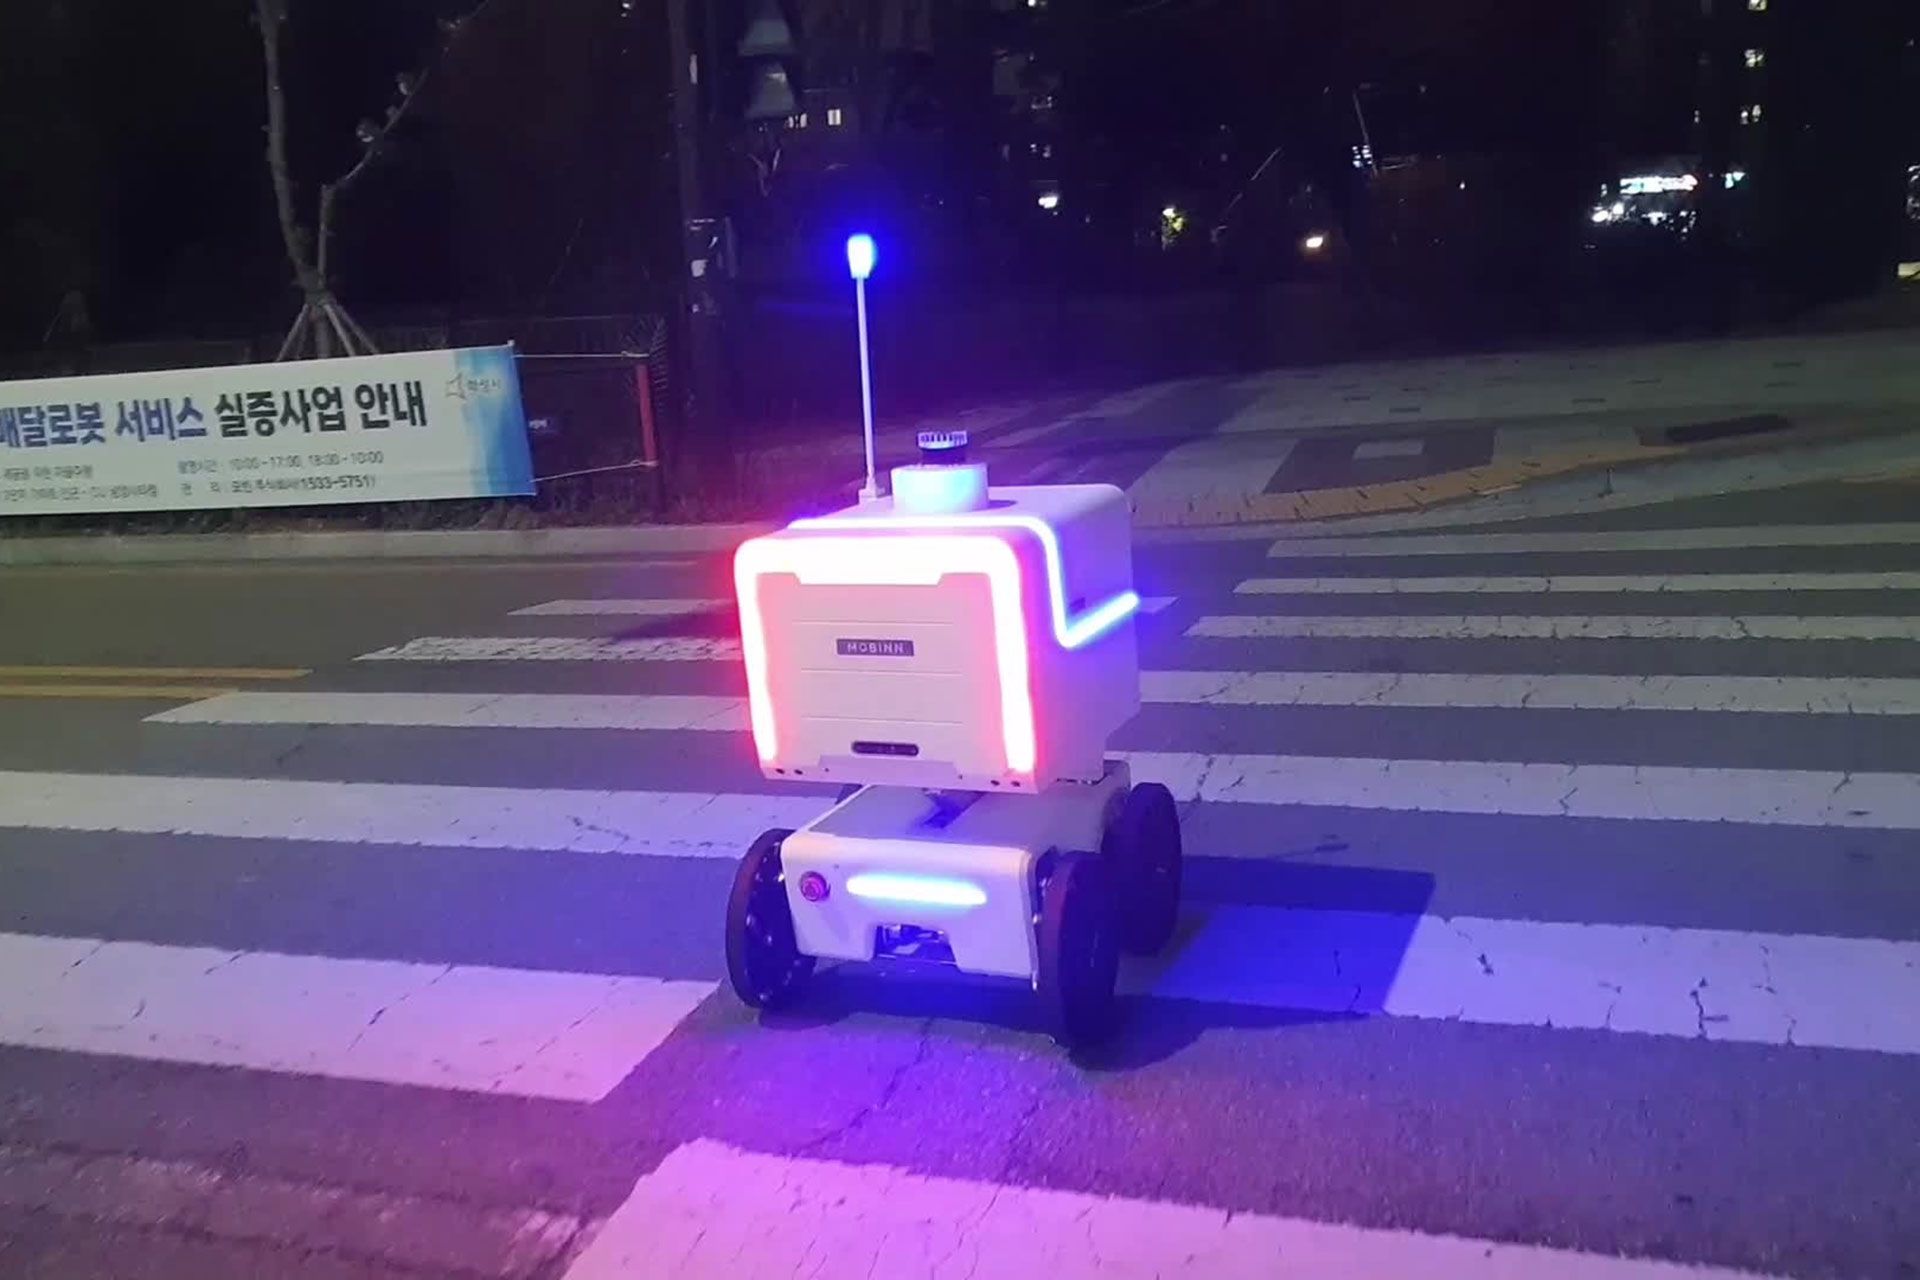 ربات تحویل دهنده بسته در حال حرکت از روی خط عابر پیاده